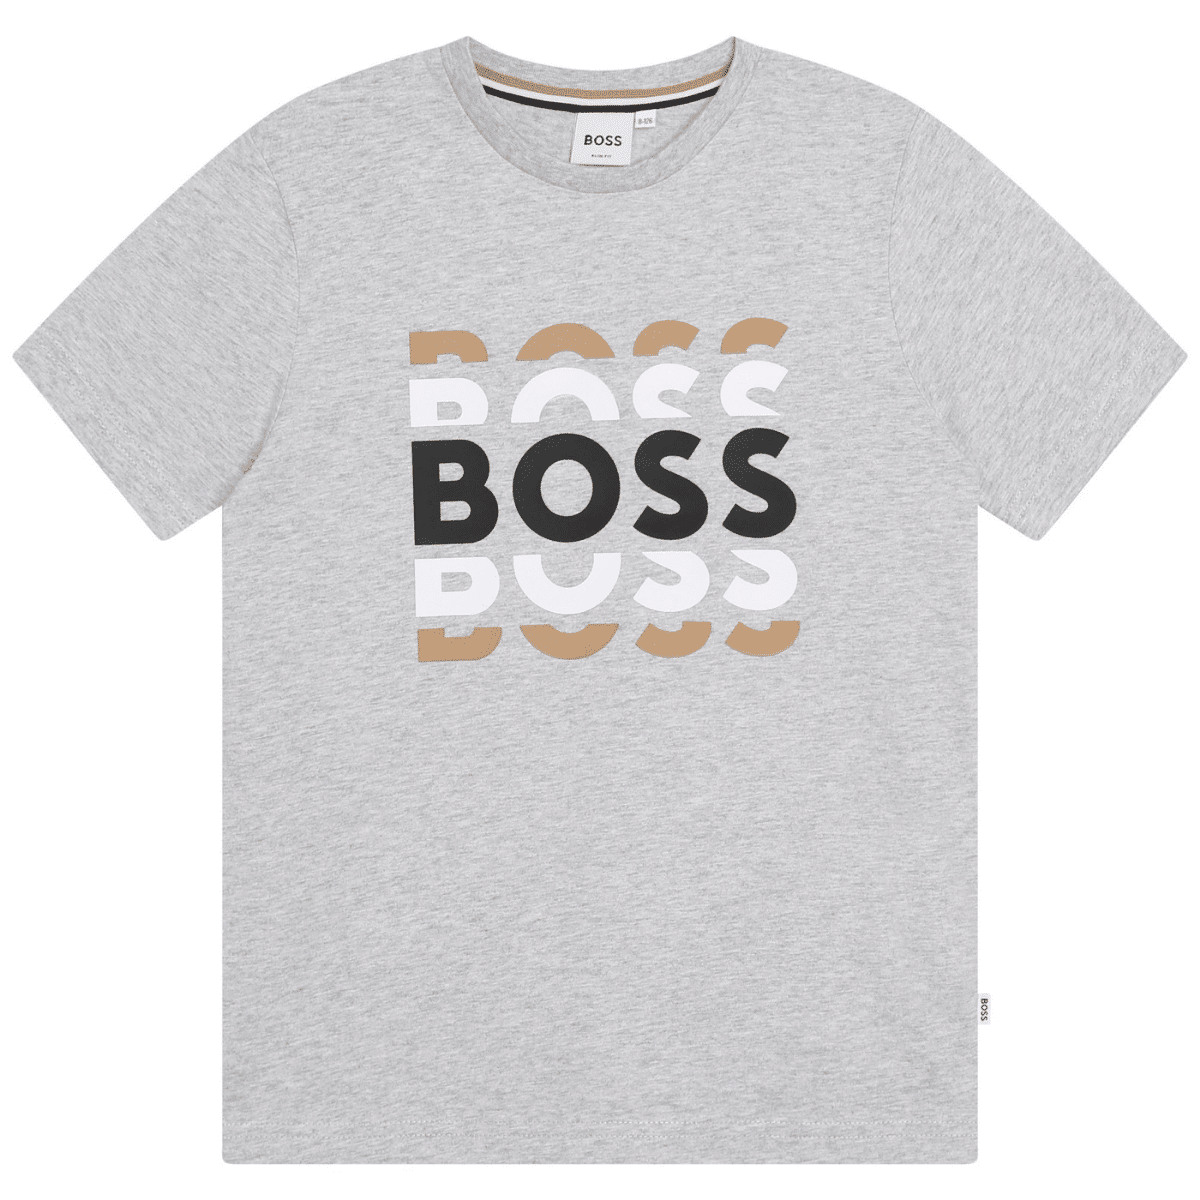 boss boys pale grey tshirt